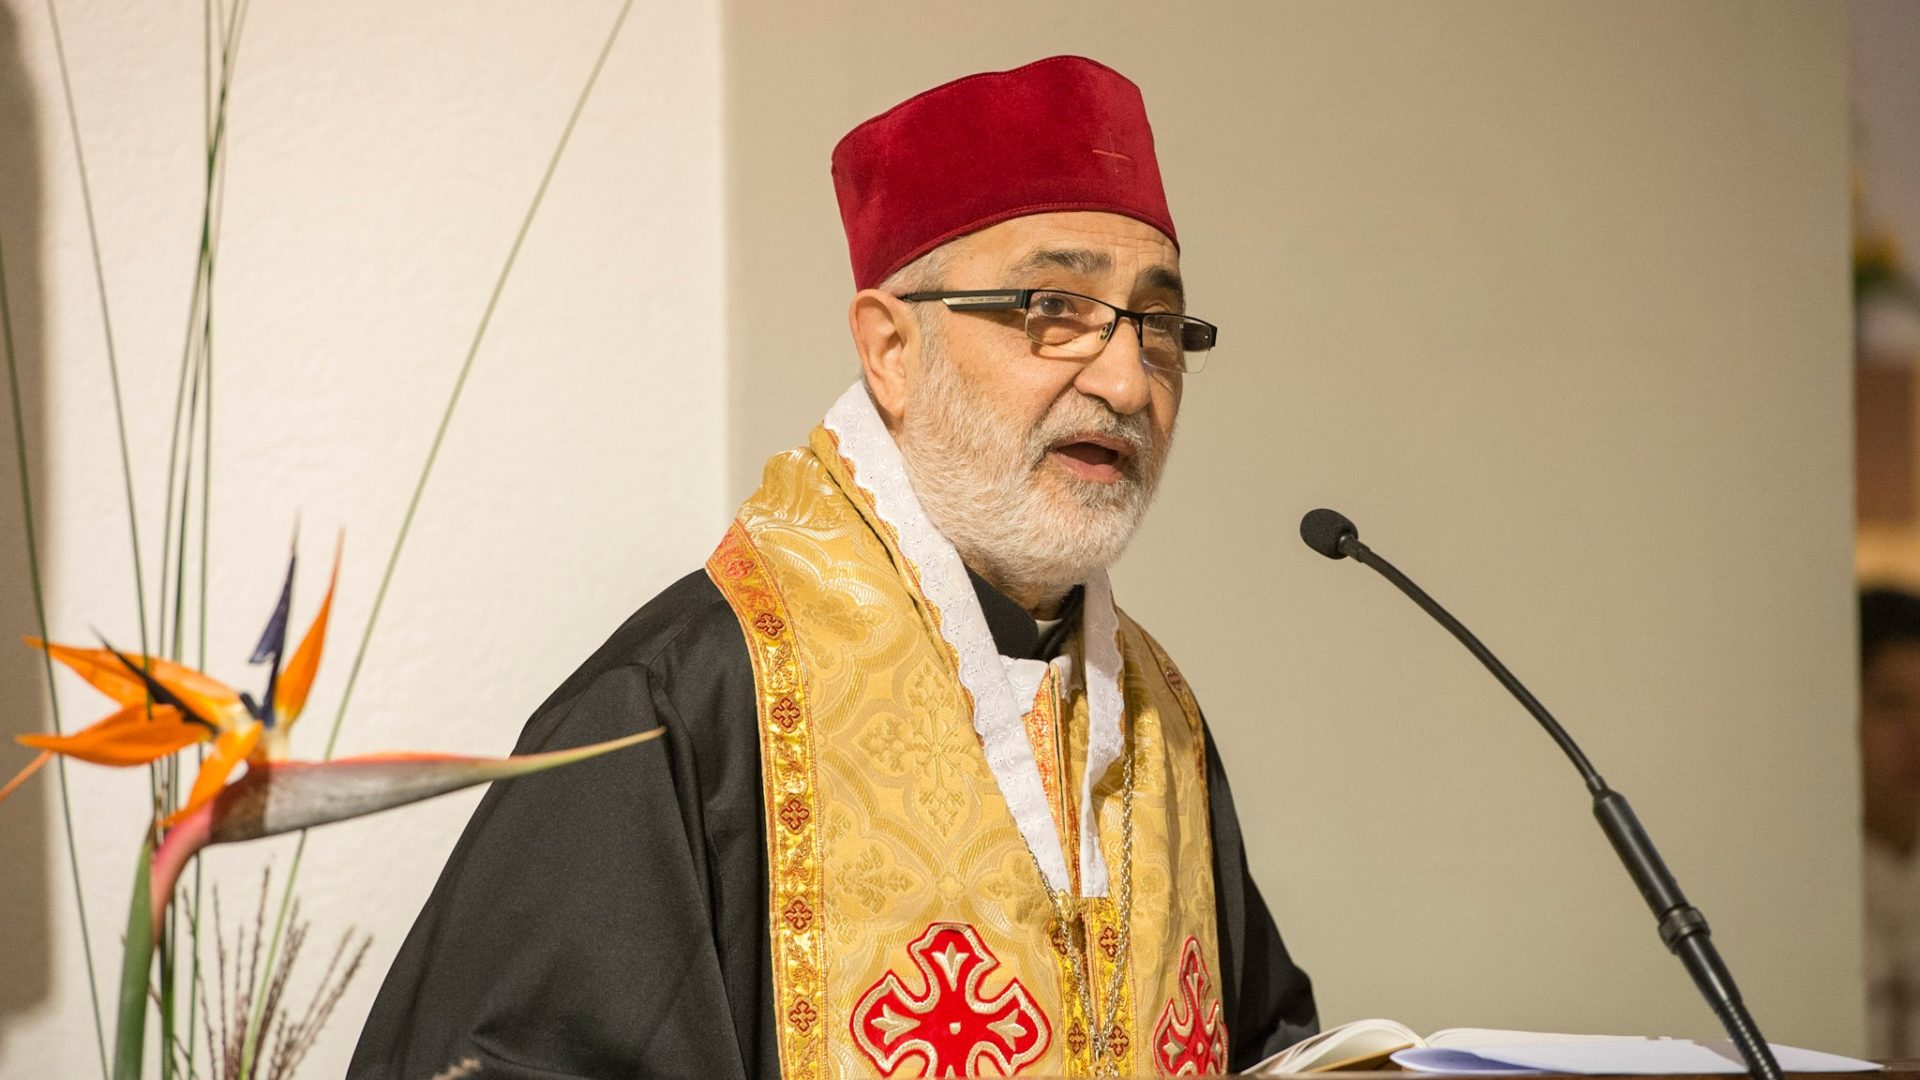 Mgr Nicolas Antiba, archimandrite de Bosra et Hauran, en Syrie, a remercié les paroissiens de Villars-sur-Glâne (Photo:Christoph von Siebenthal)